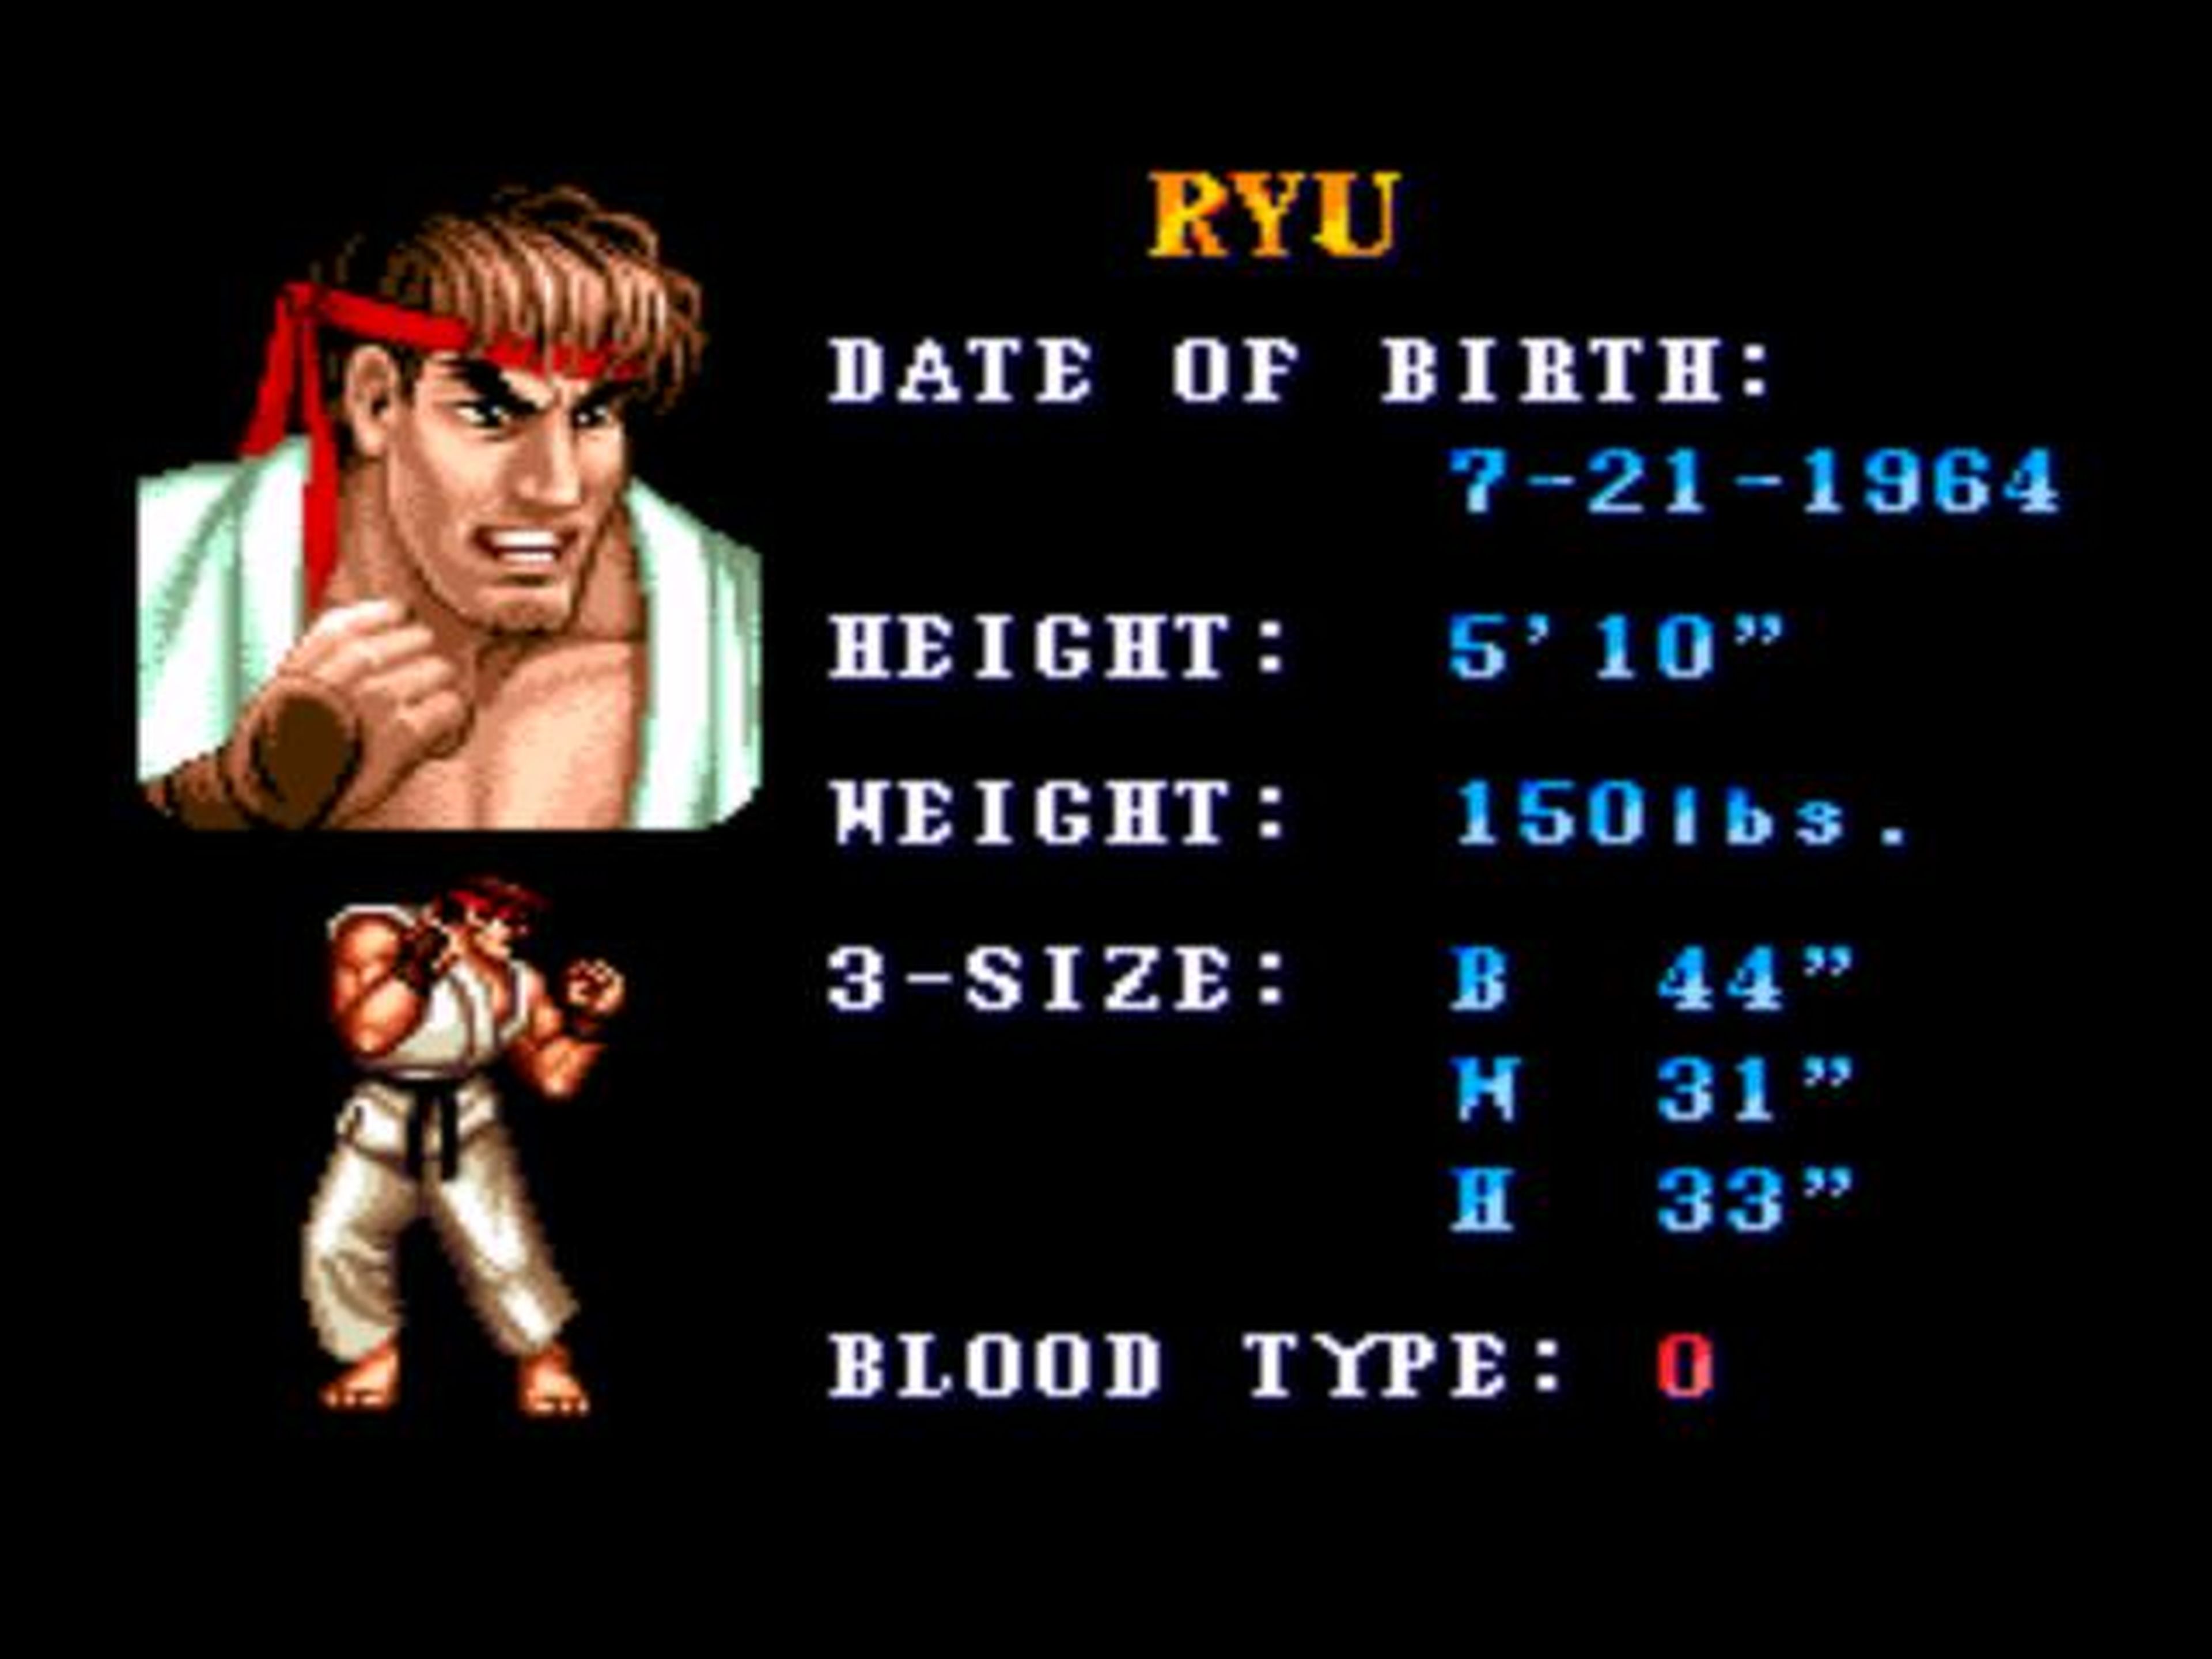 La semana de Street Fighter: así es Ryu